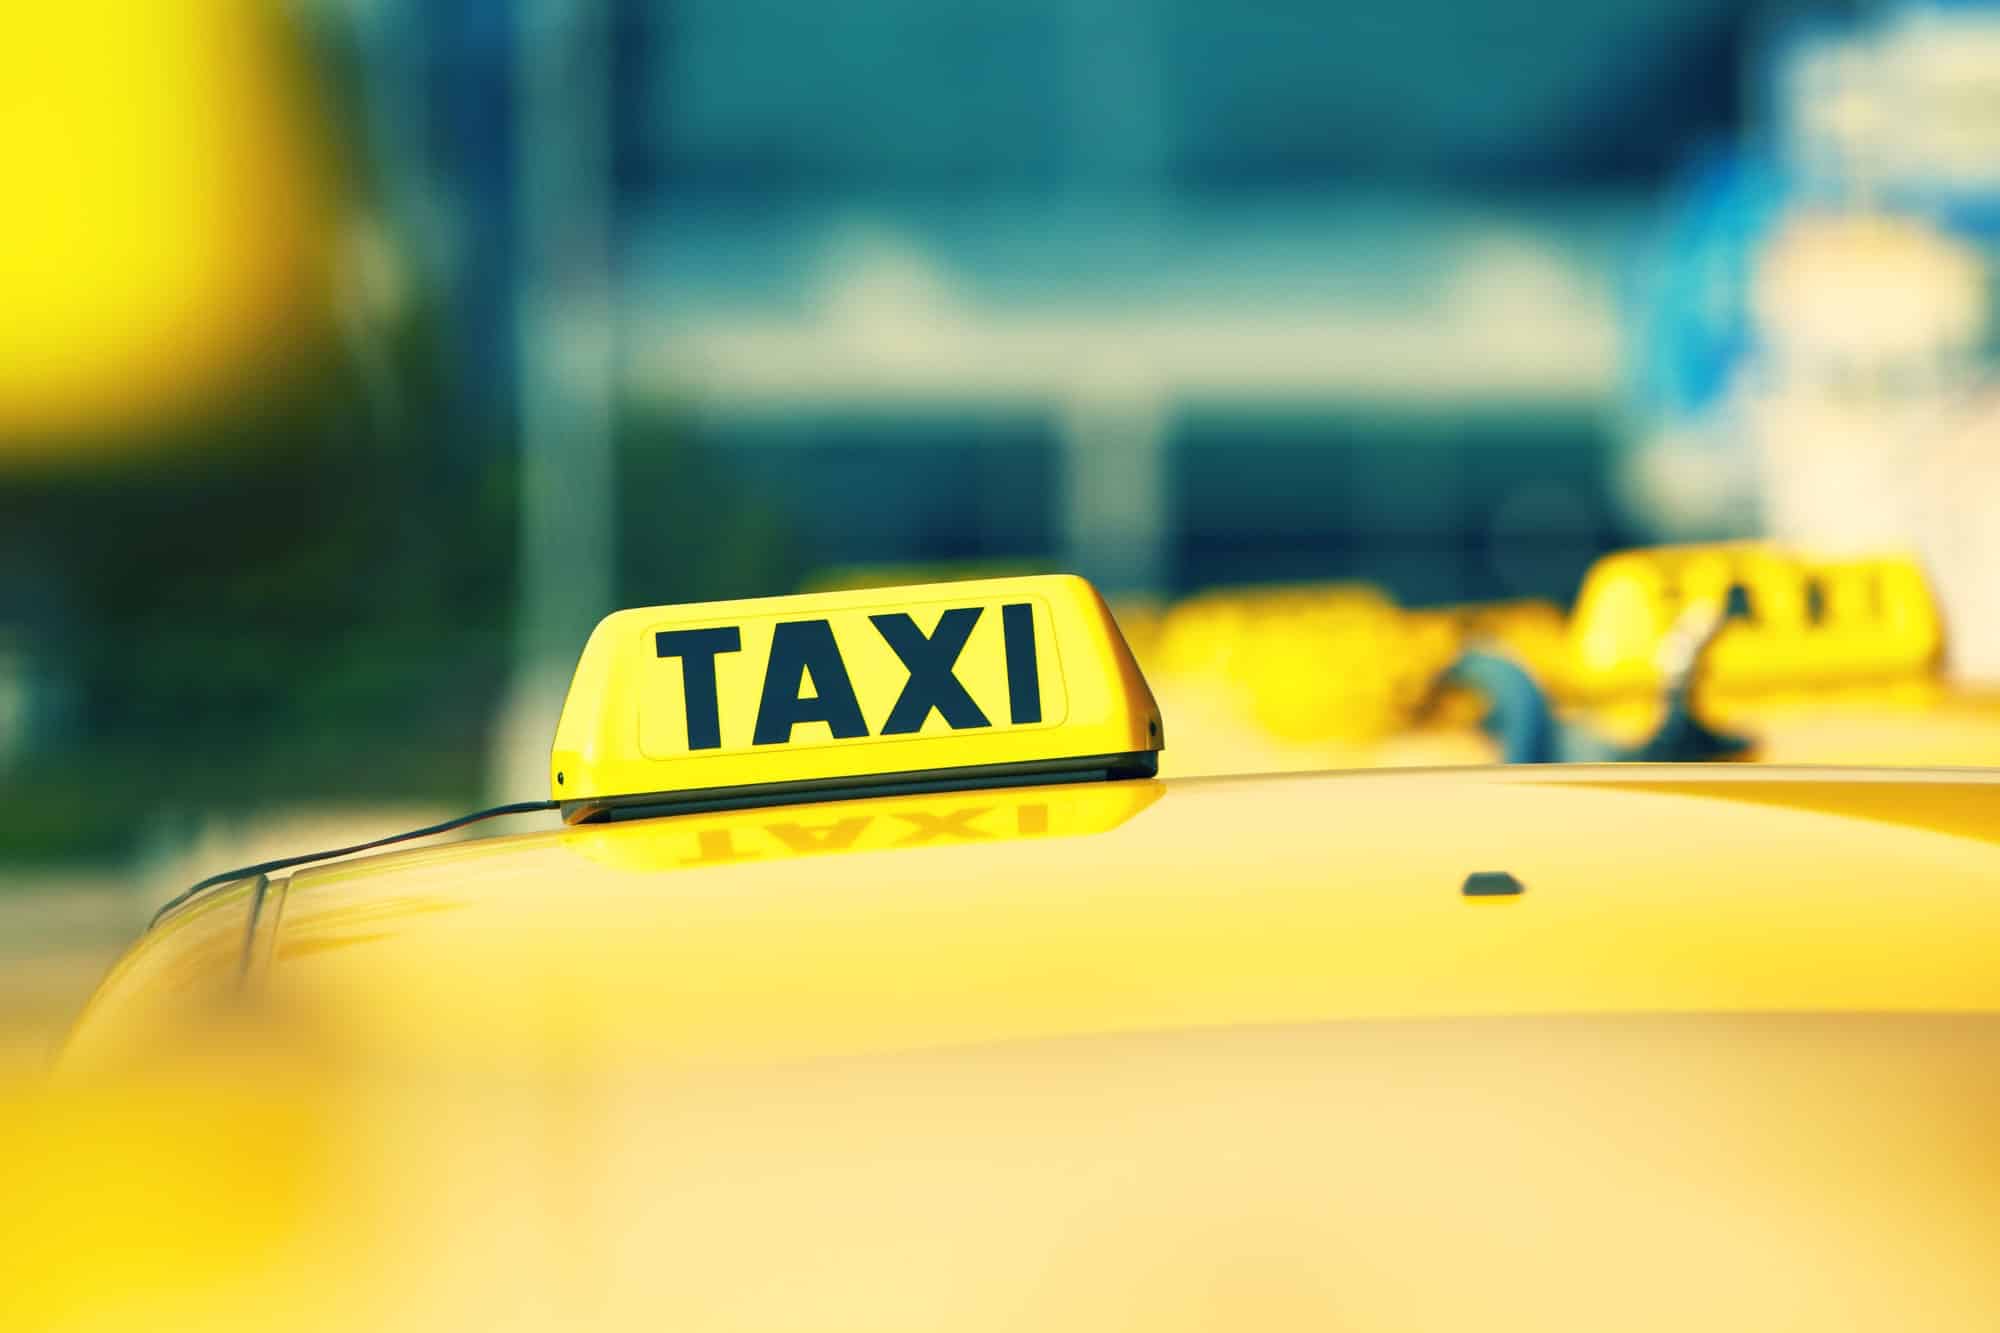 Taxi à Lille : Pourquoi privilégier ce moyen de transport pour ses déplacements ?